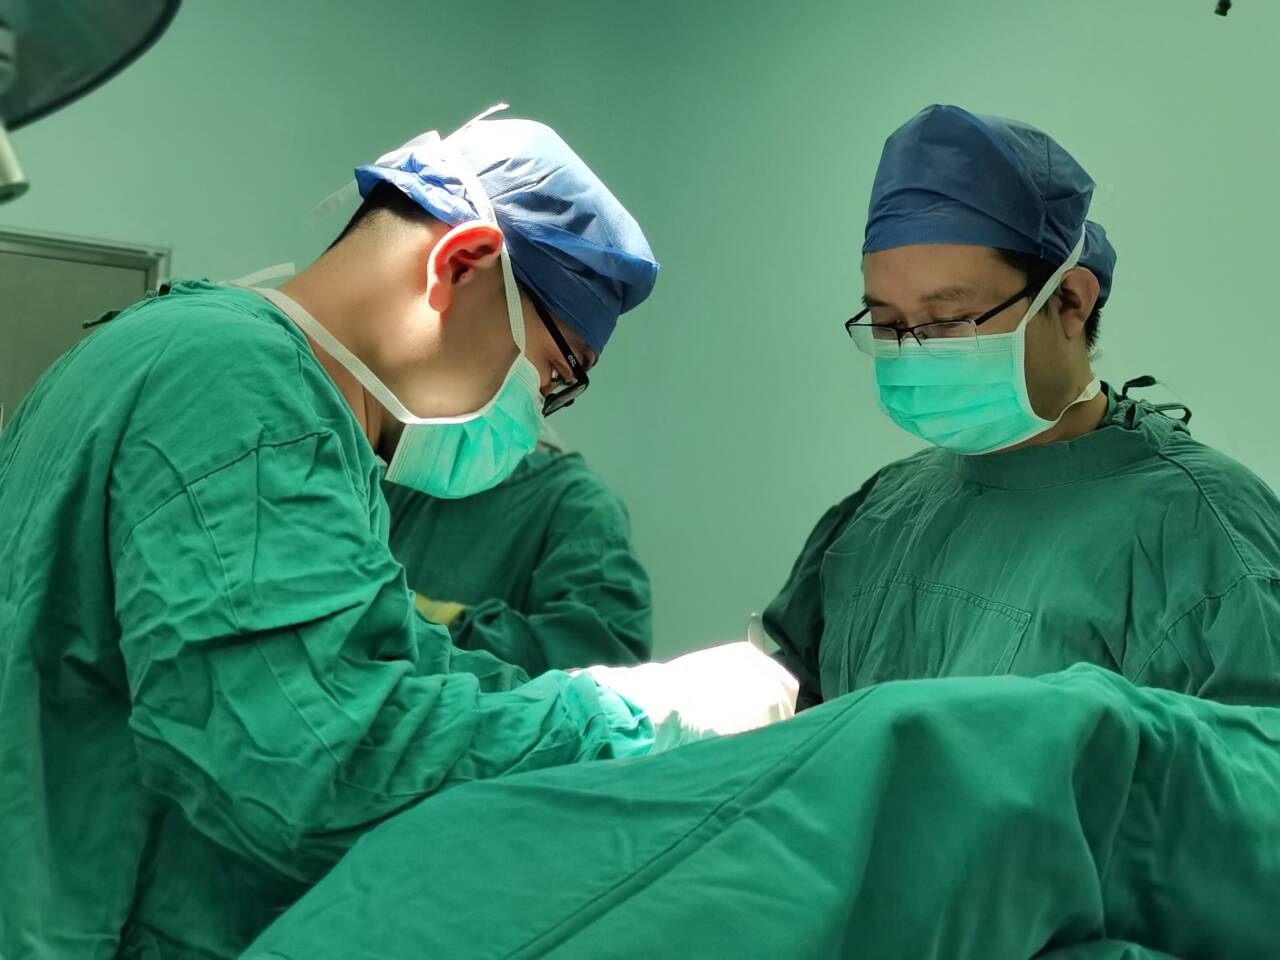 潍坊市人民医院日间手术：入院、手术、出院一天完成 省心、省钱、省事儿